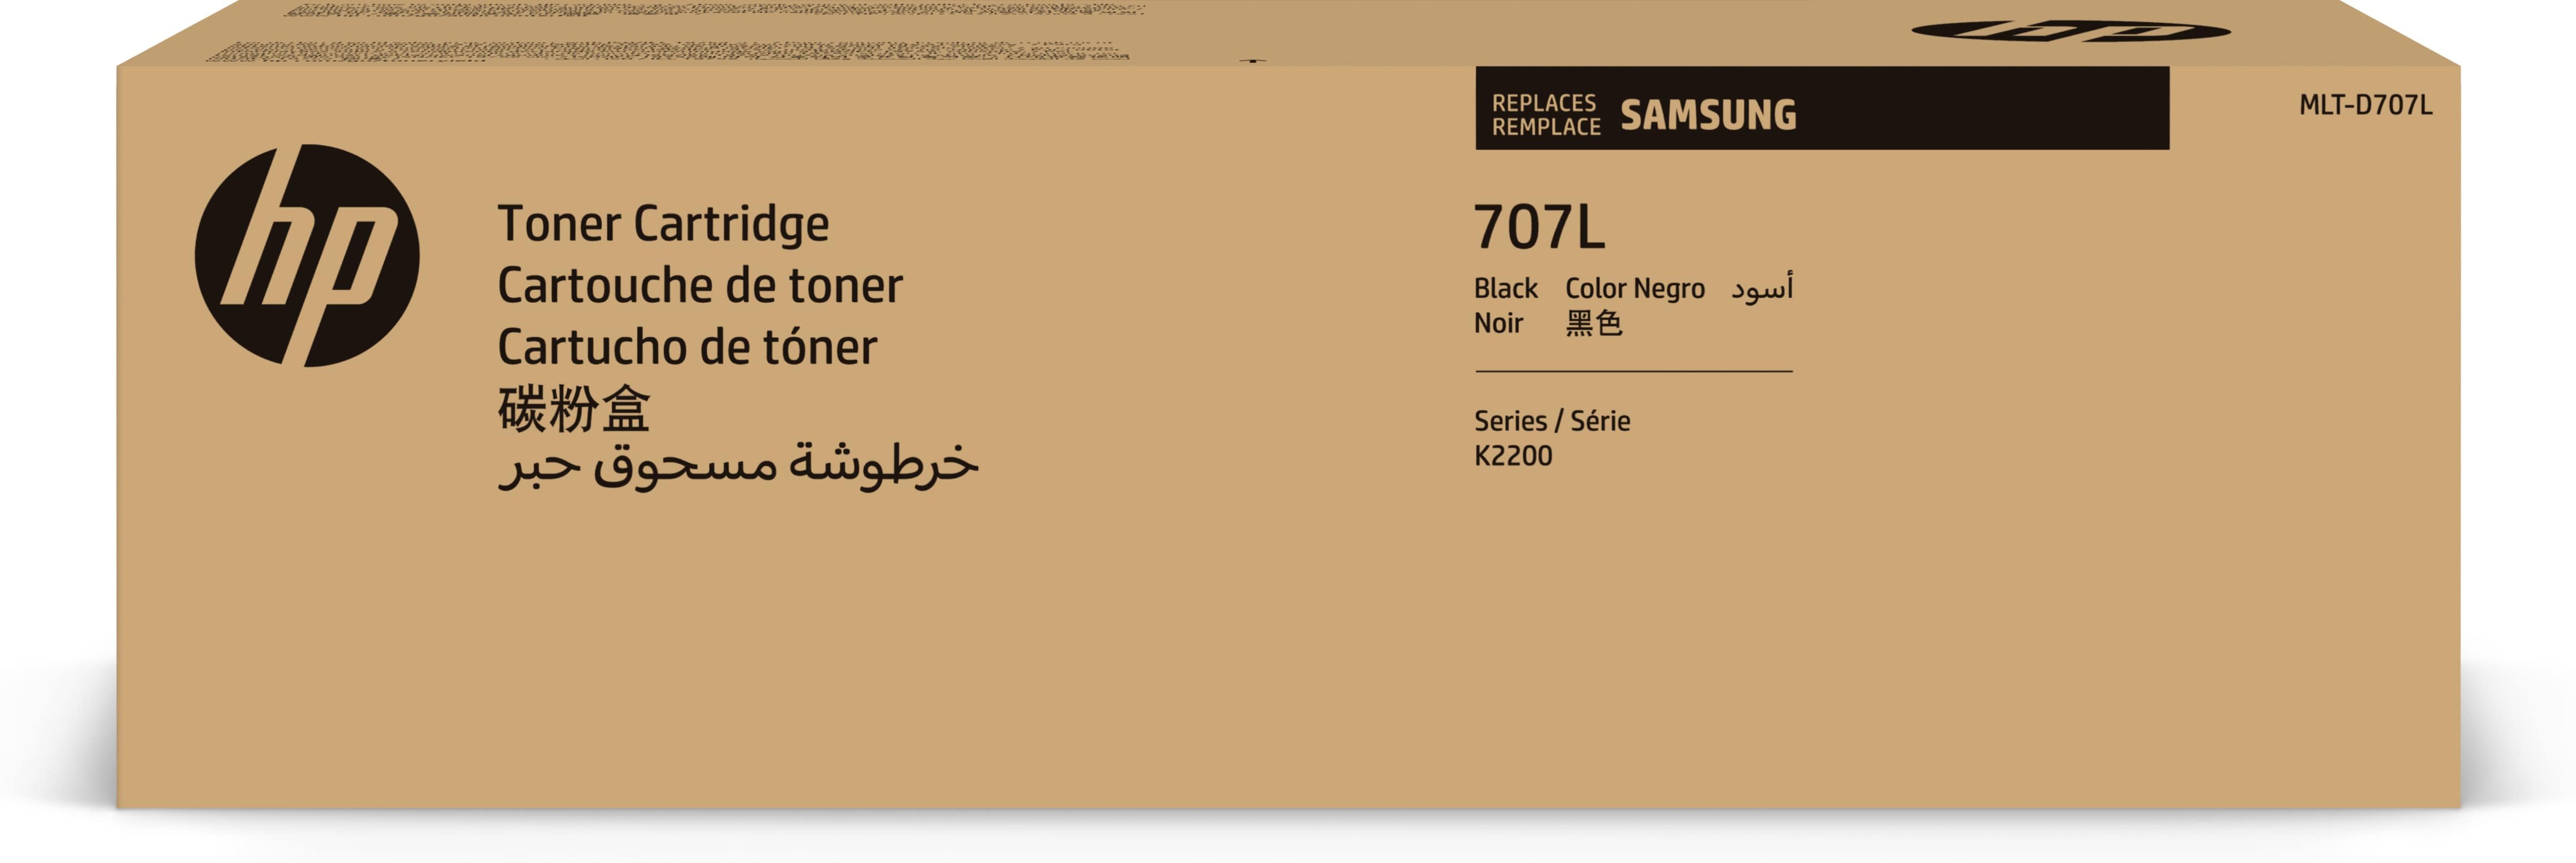 Samsung Toner MLT-D707L / SS775A Nero